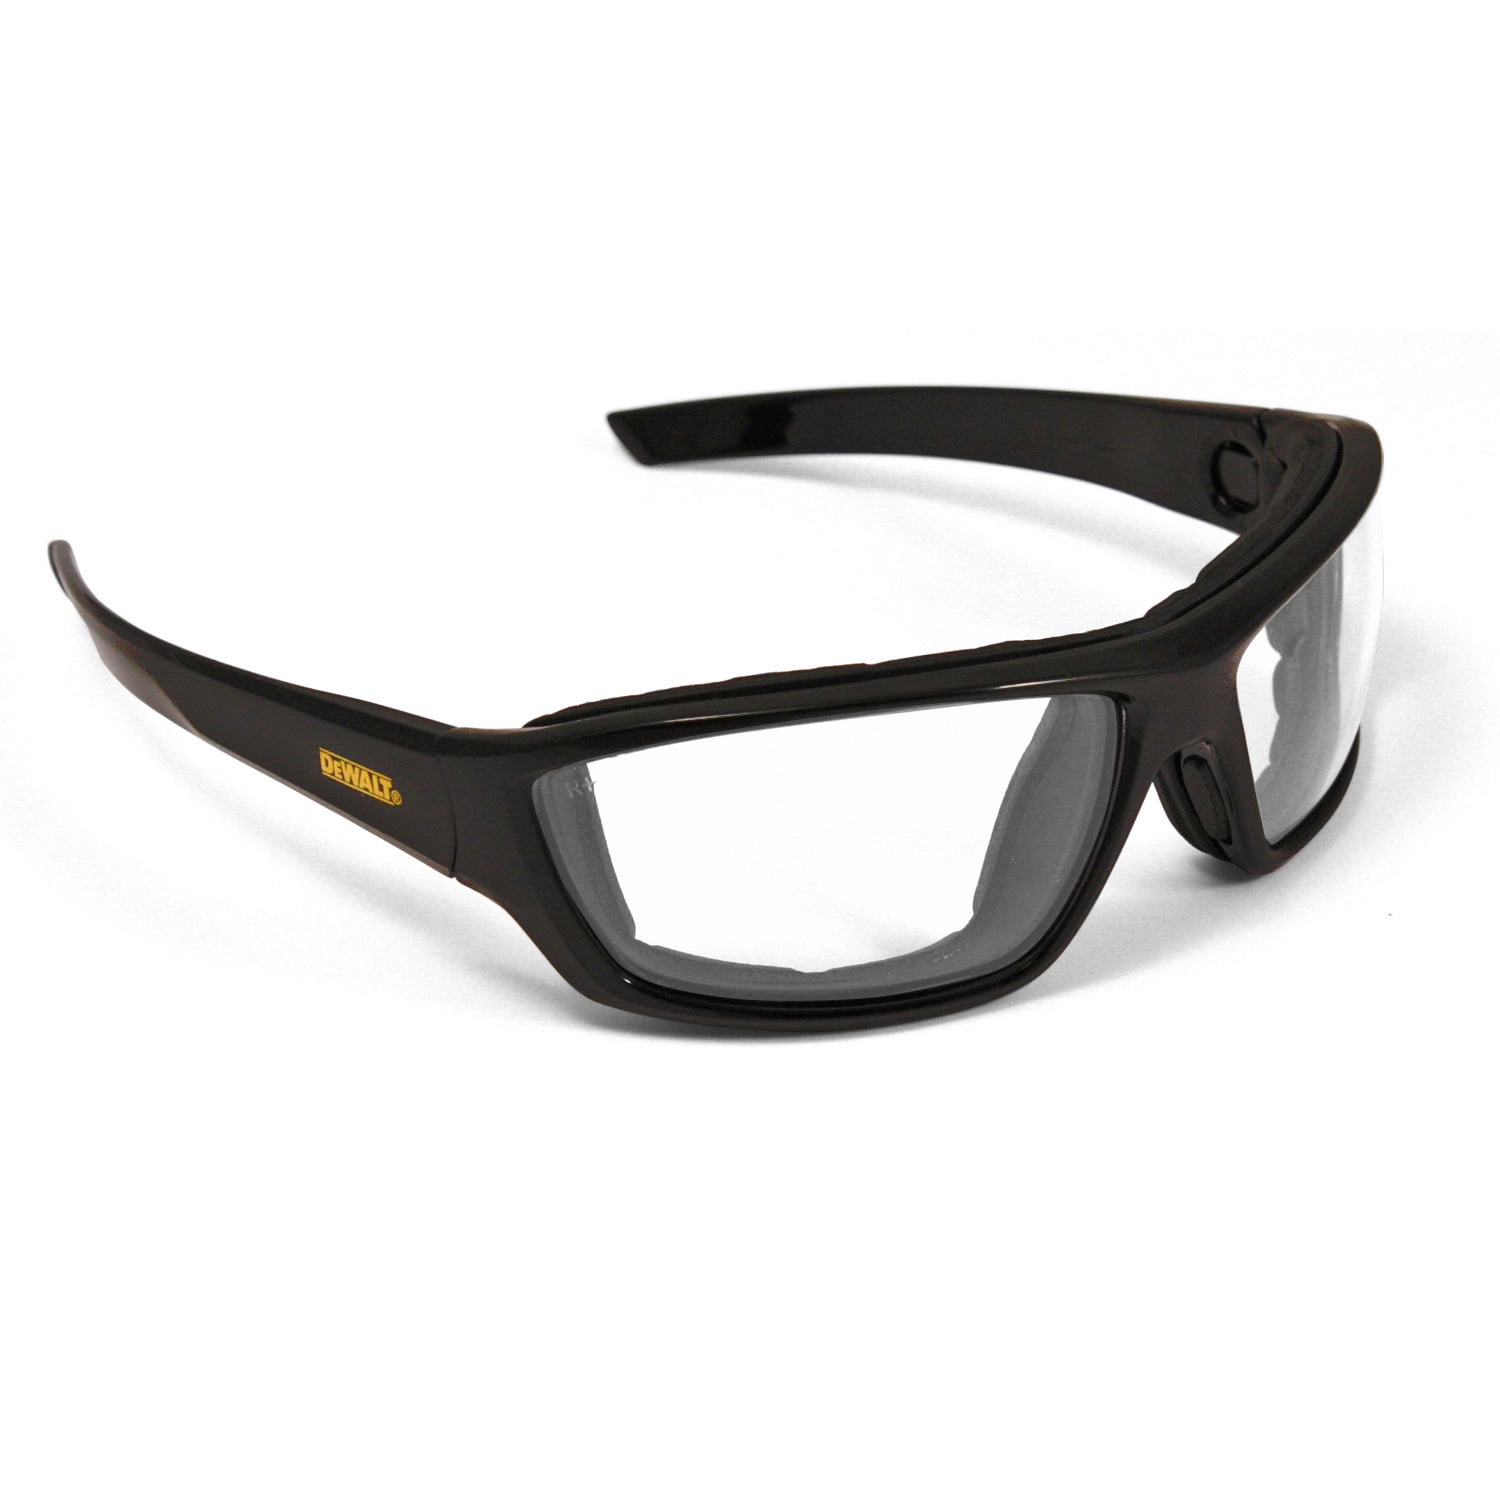 Dewalt DPG104 Excavator Safety  Lens Protective Safety Glasses/ Choose Color 